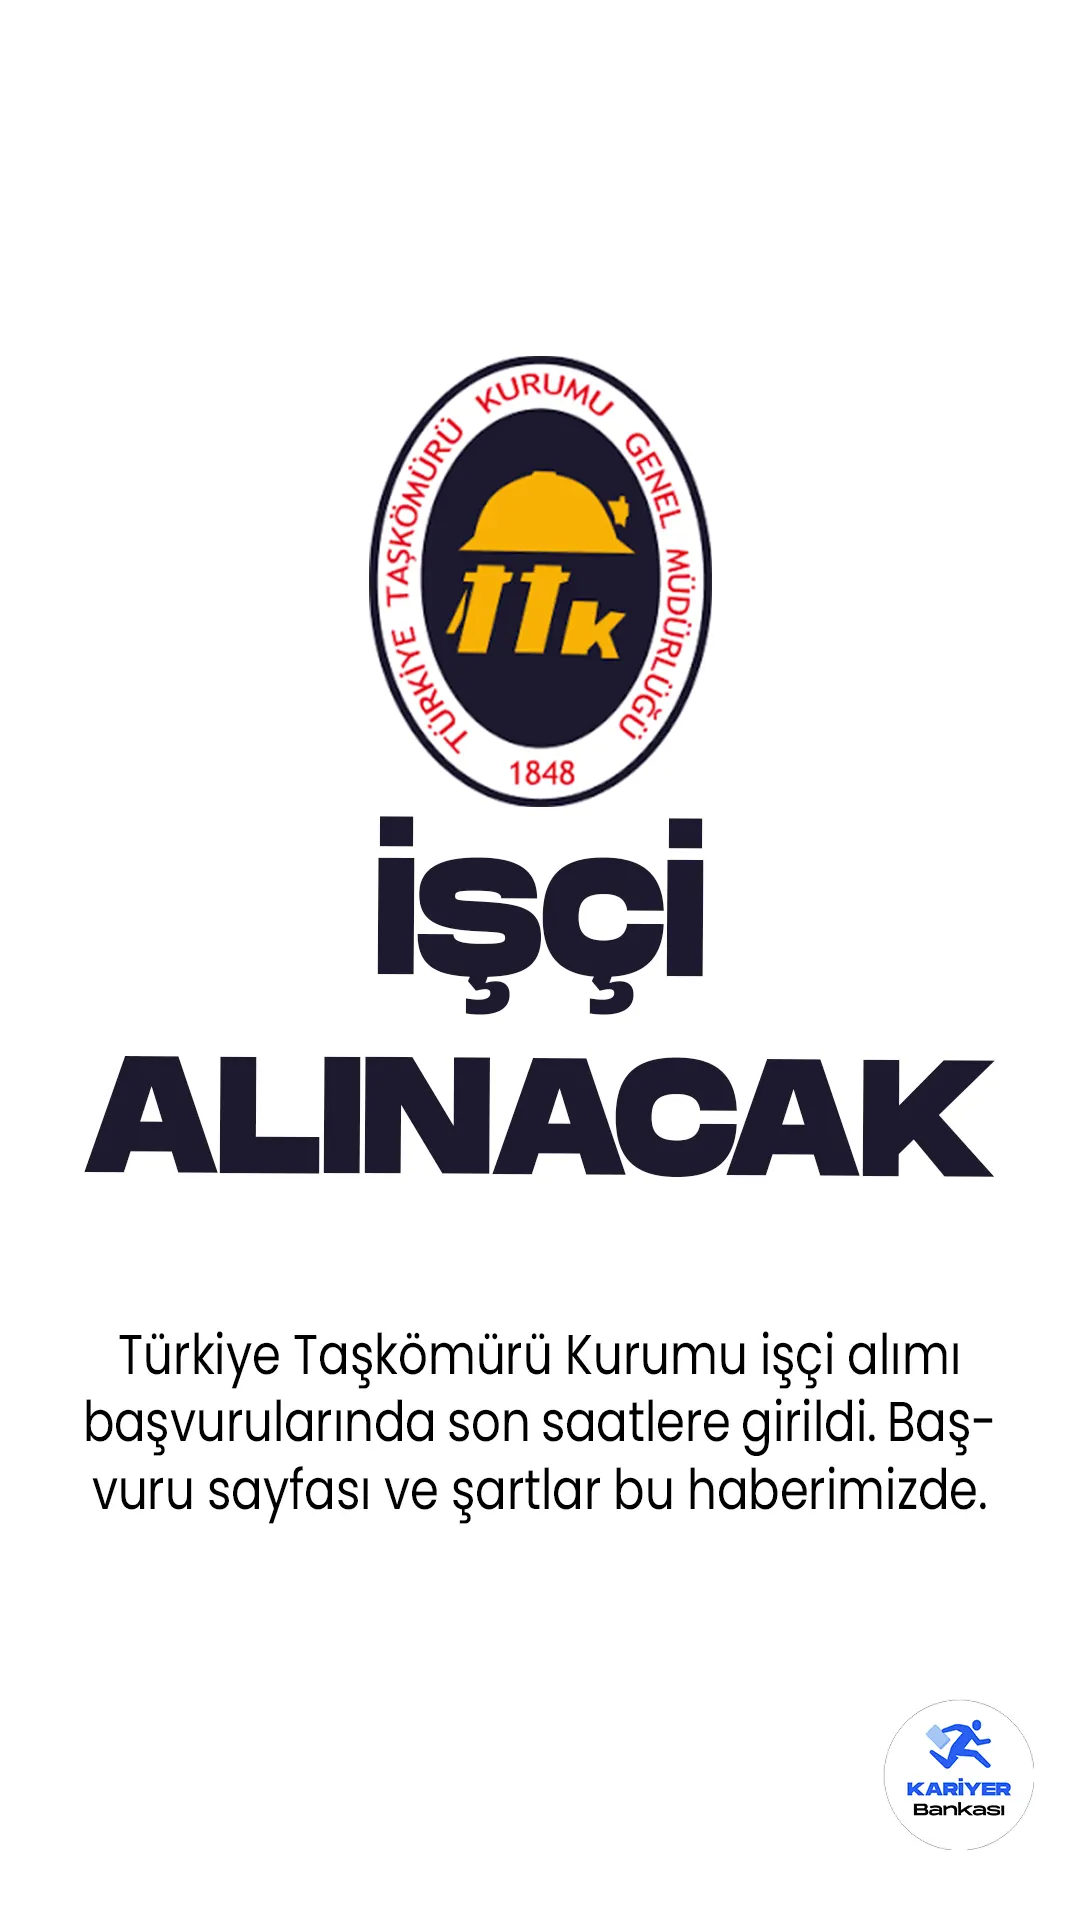 Türkiye Taşkömürü Kurumu işçi alımı başvurularında son saatlere girildi. TTK işçi alımı başvuru işlemleri Türkiye İş Kurumu (iŞKUR) resmi sayfası üzerinden gerçekleştiriliyor. Başvurular bugün(9 Haziran) sona eriyor. Başvuru yapacak adayların belirtilen şartları dikkatle incelemesi gerekmektedir.